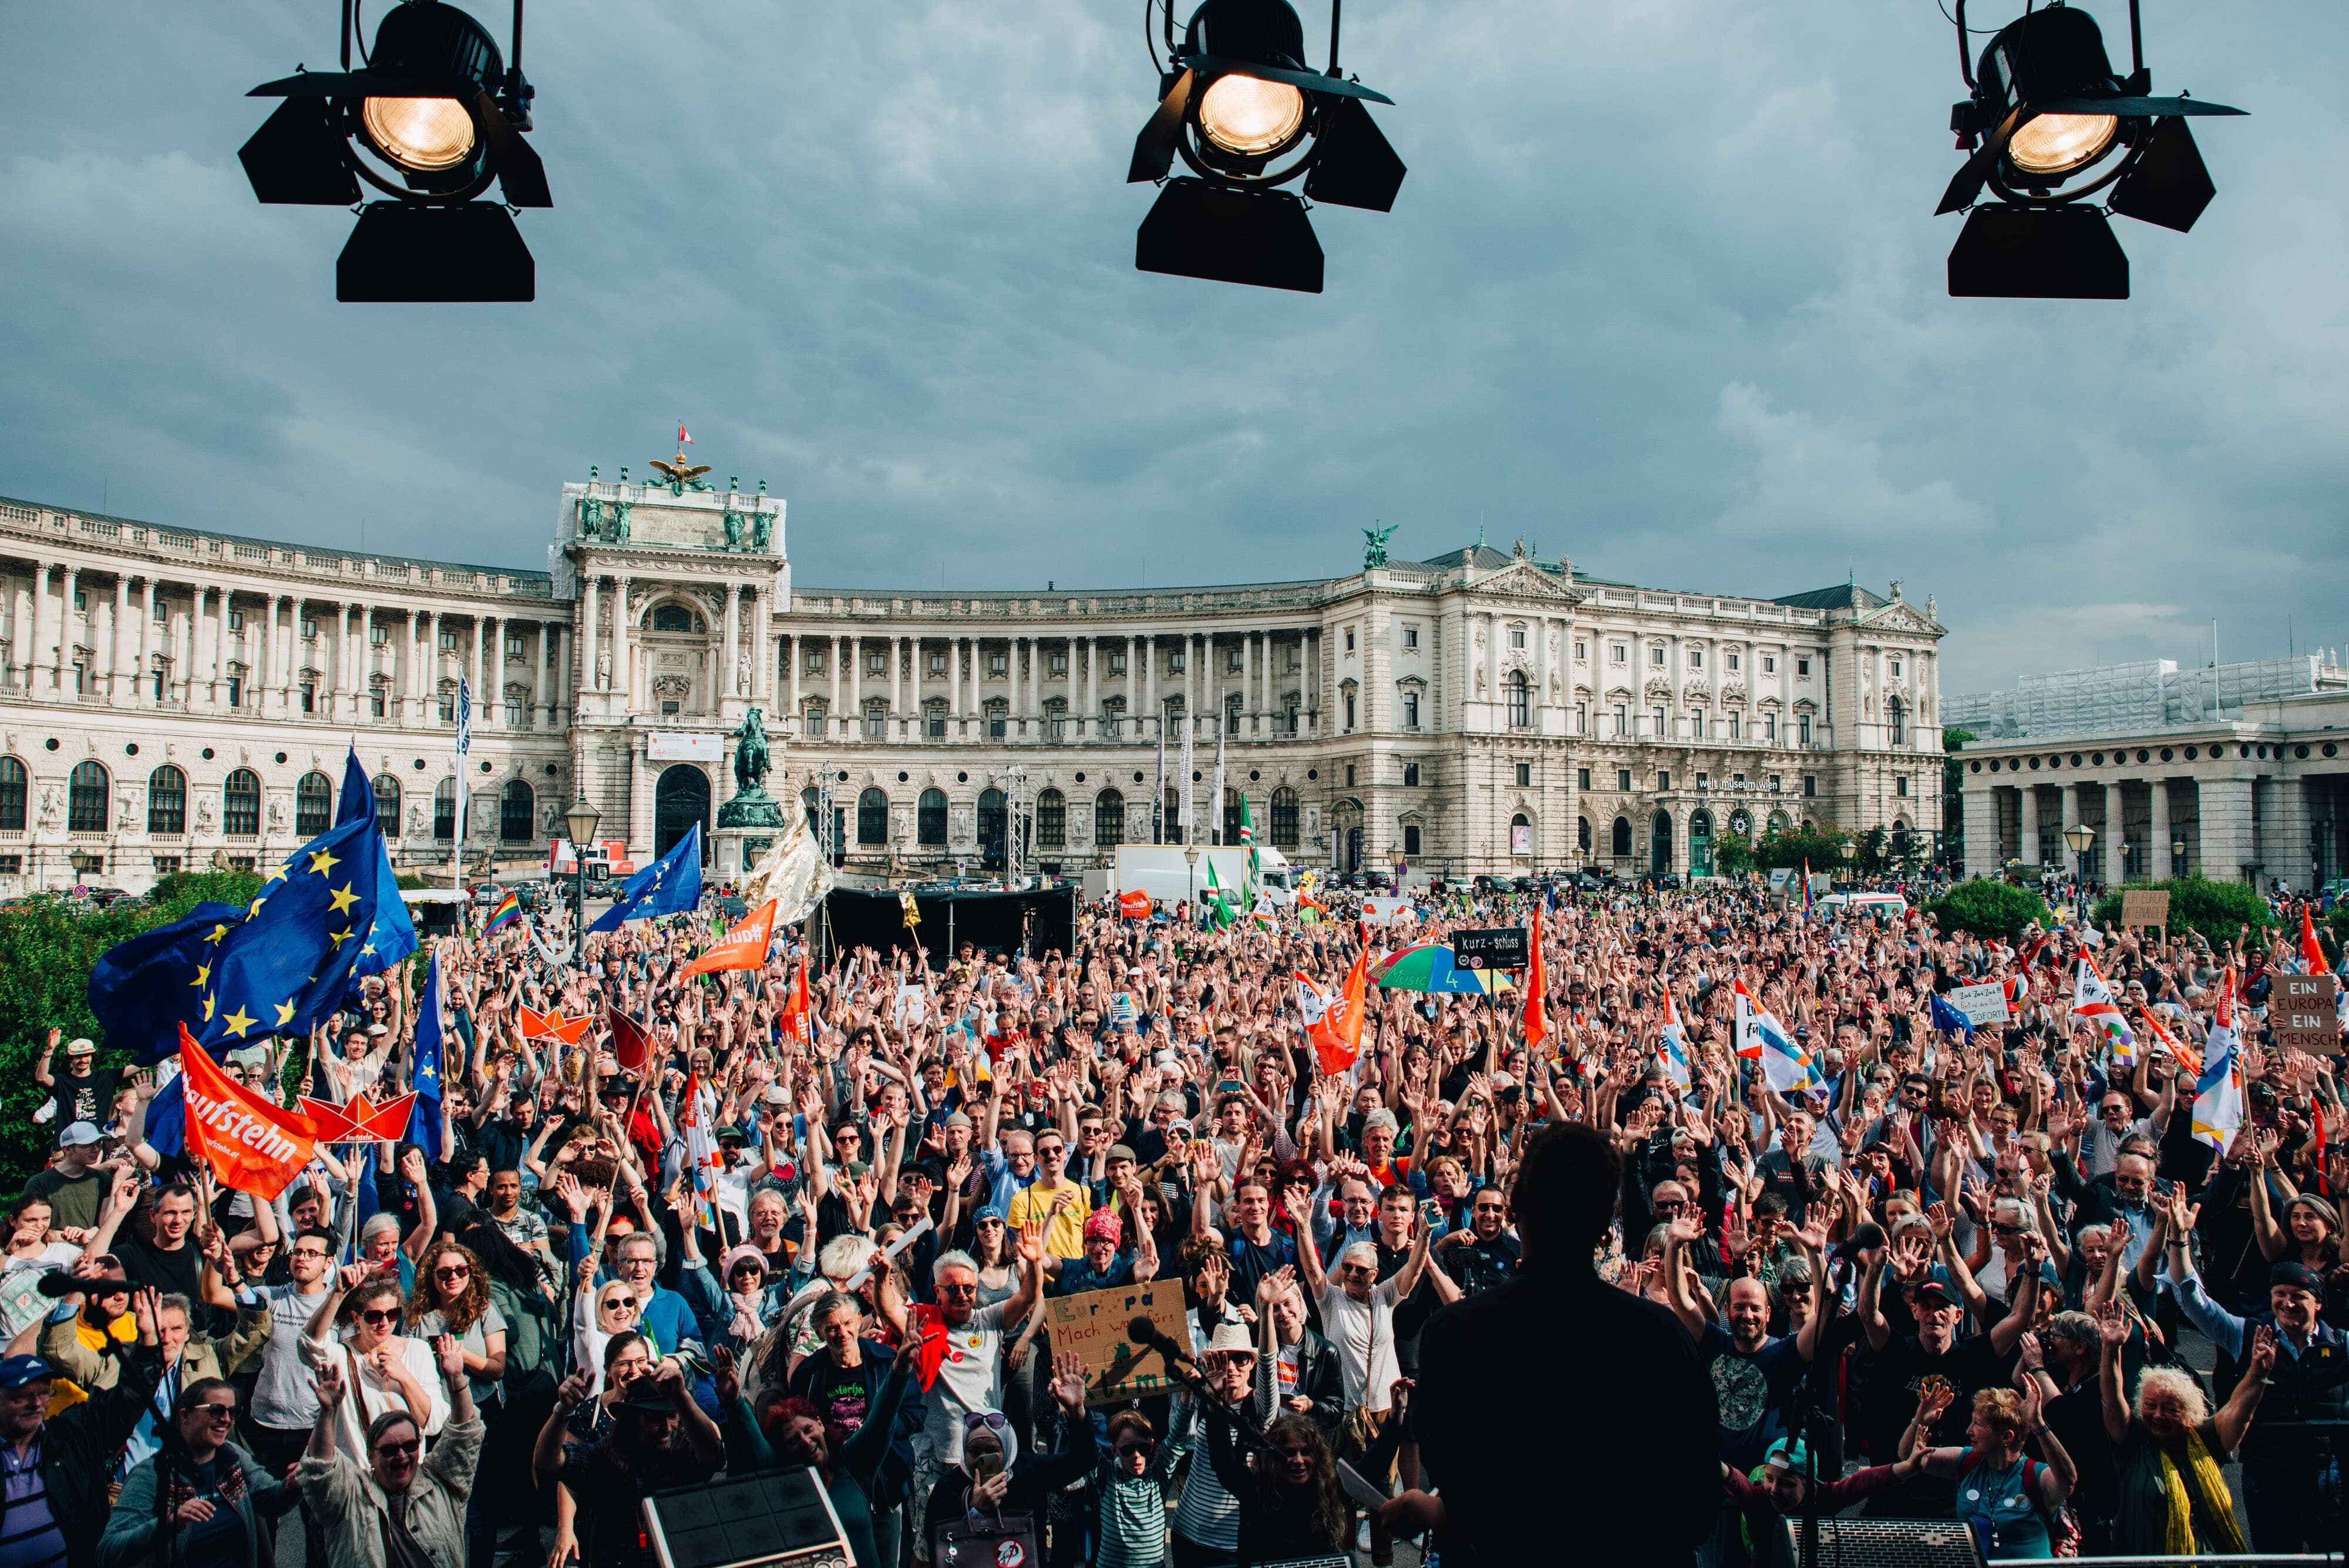 Foto einer Menschenmenge auf einem Platz, die EU- und andere Flaggen schwenkt